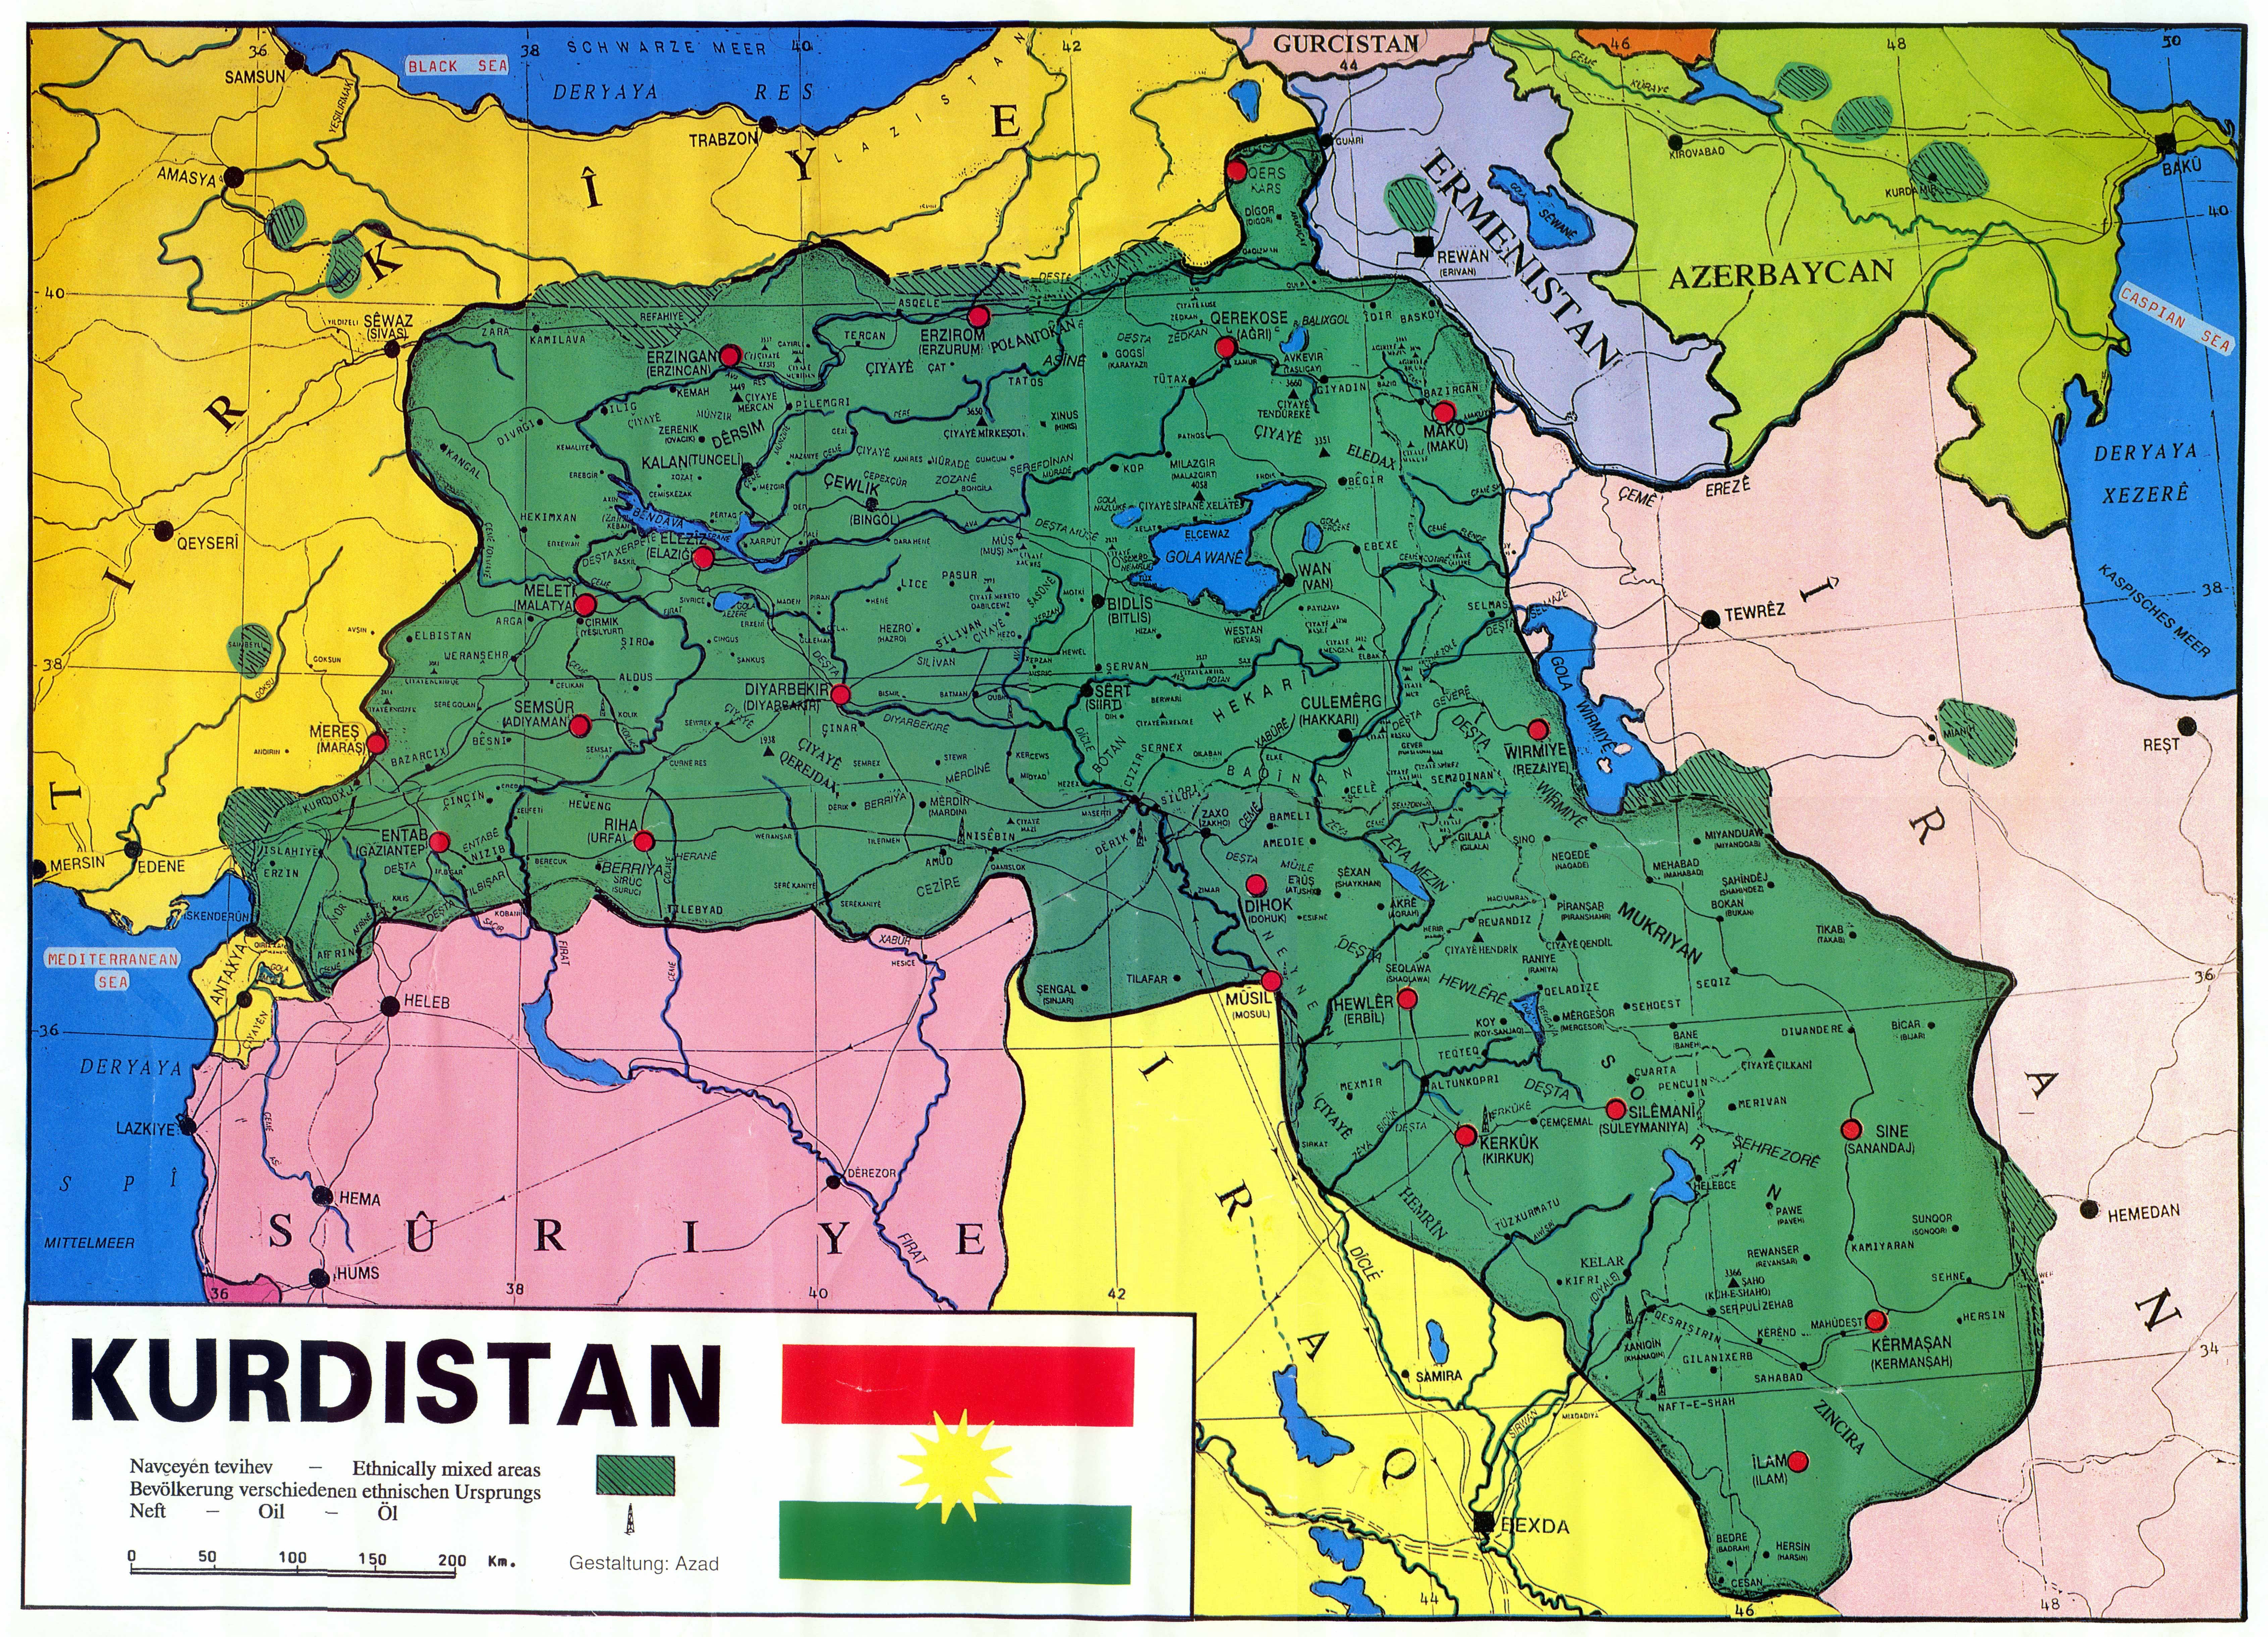 kurdistan, Kurd, Kurds, Kurdish, Map, Maps, Poster Wallpaper